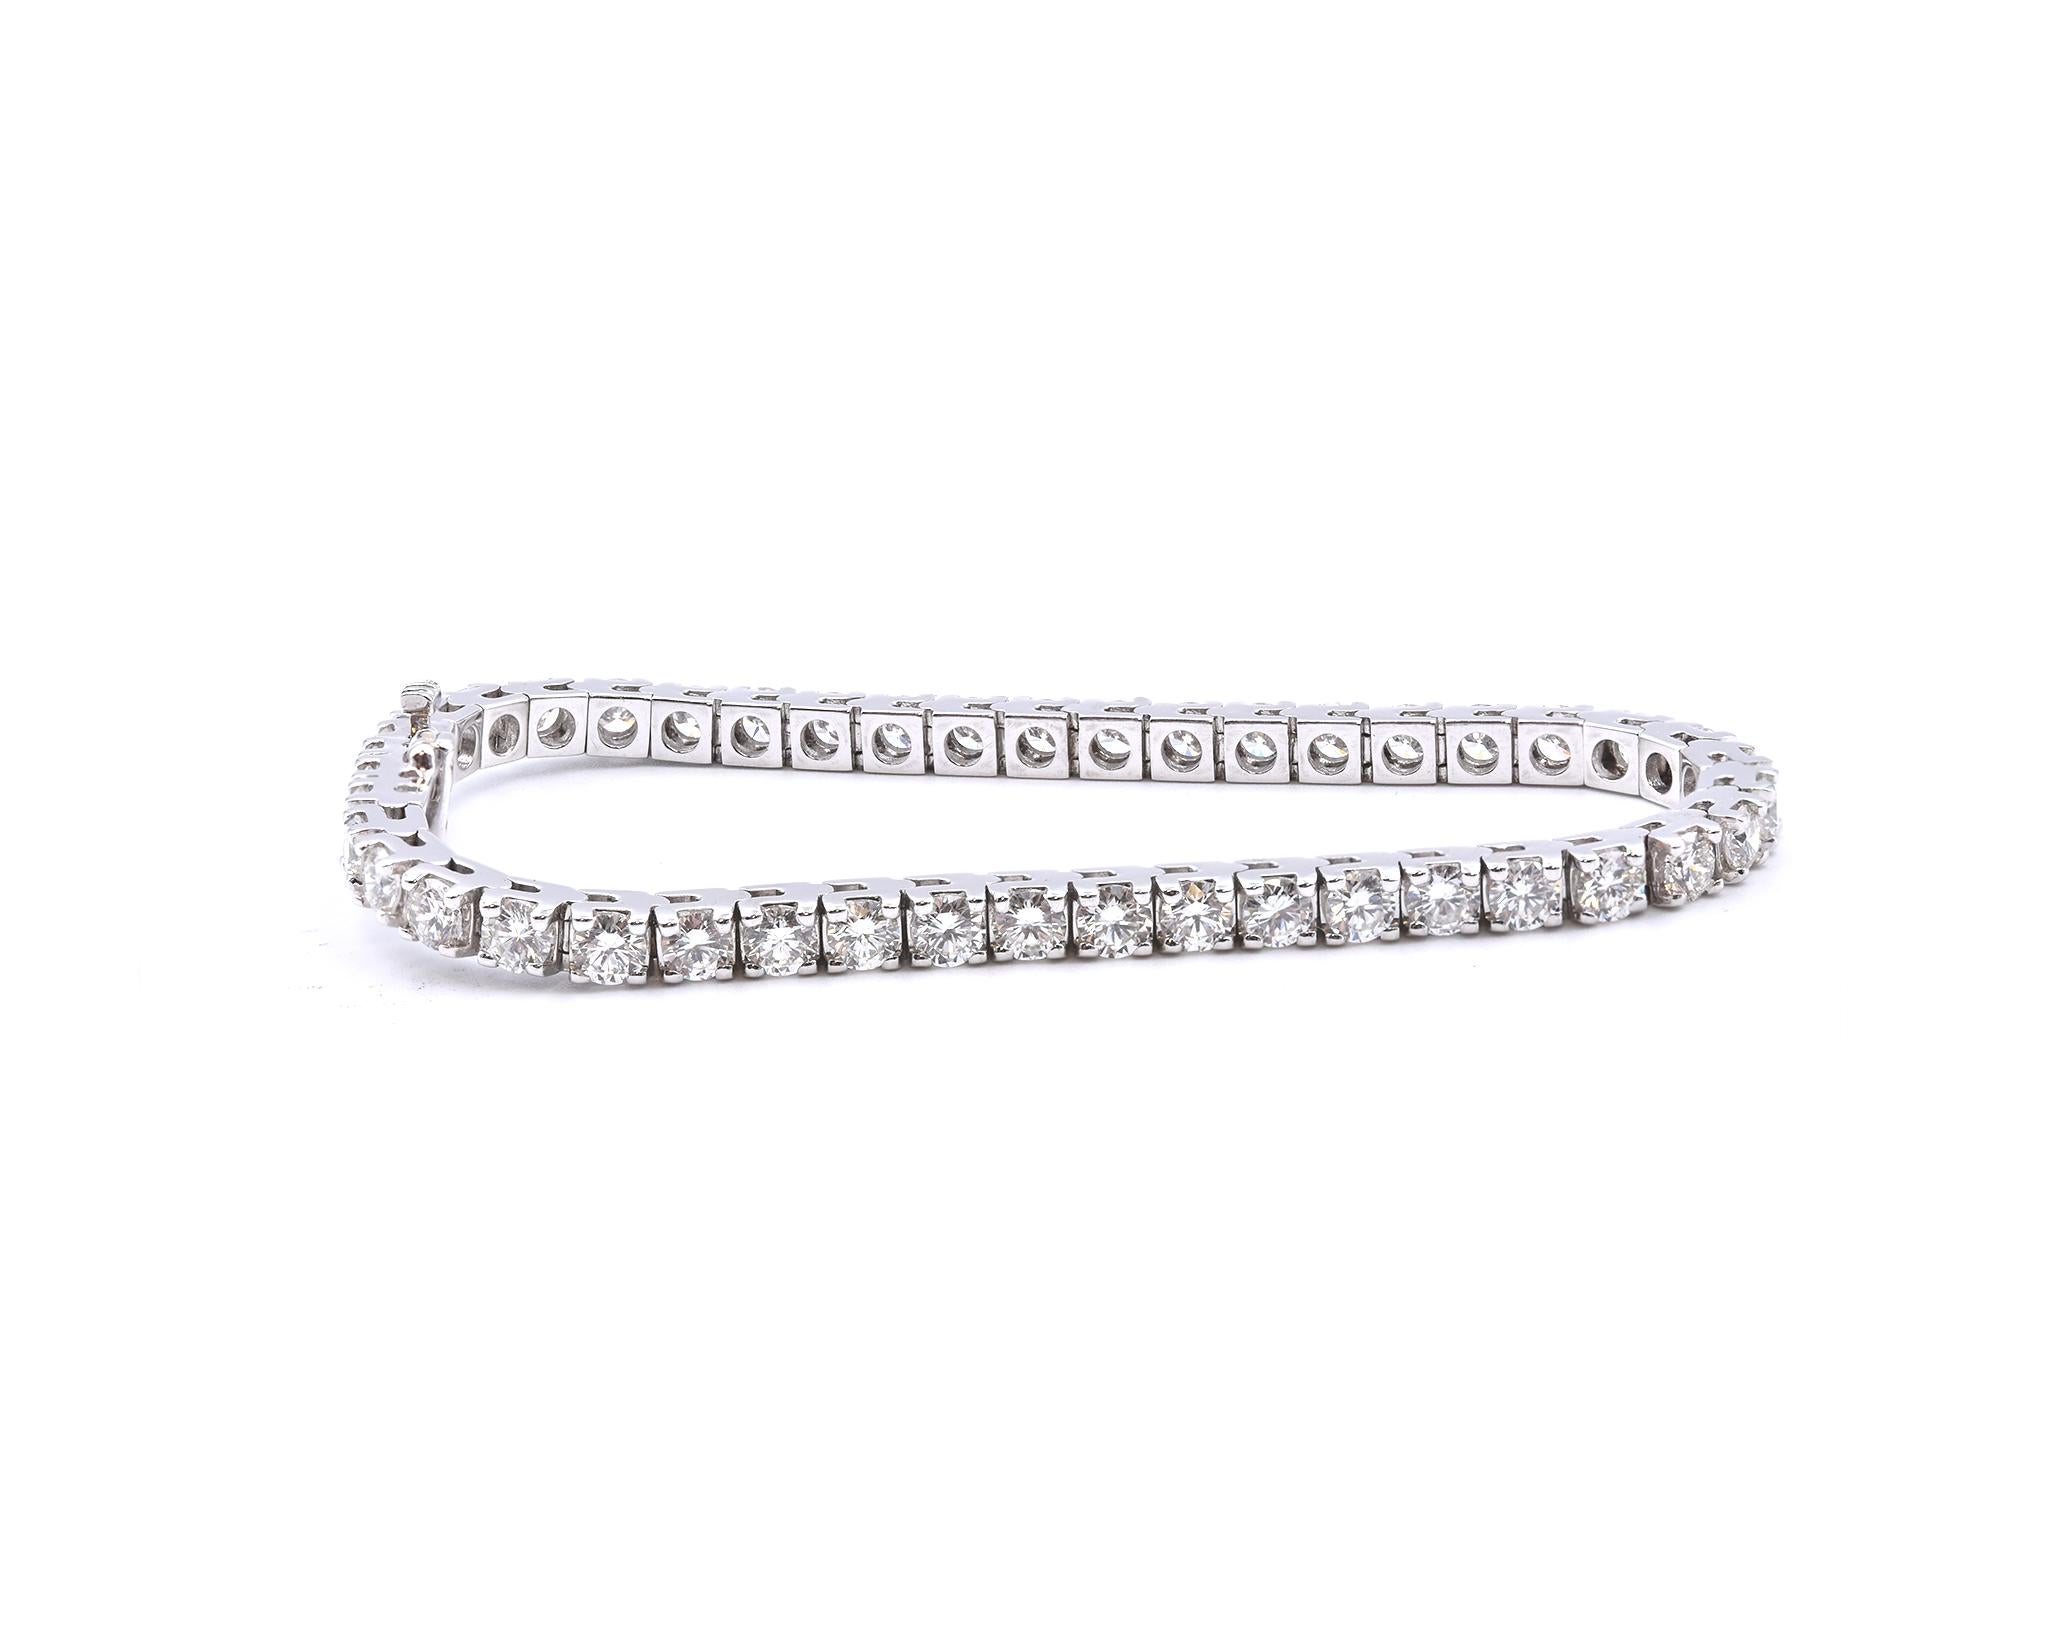 Matériau : or blanc 18K 
Diamants : 44 diamants ronds de taille brillant = 7,50cttw
Couleur : G
Clarté : VS2
Dimensions : le bracelet convient à un poignet de 7 pouces maximum
Poids : 19,65 grammes
